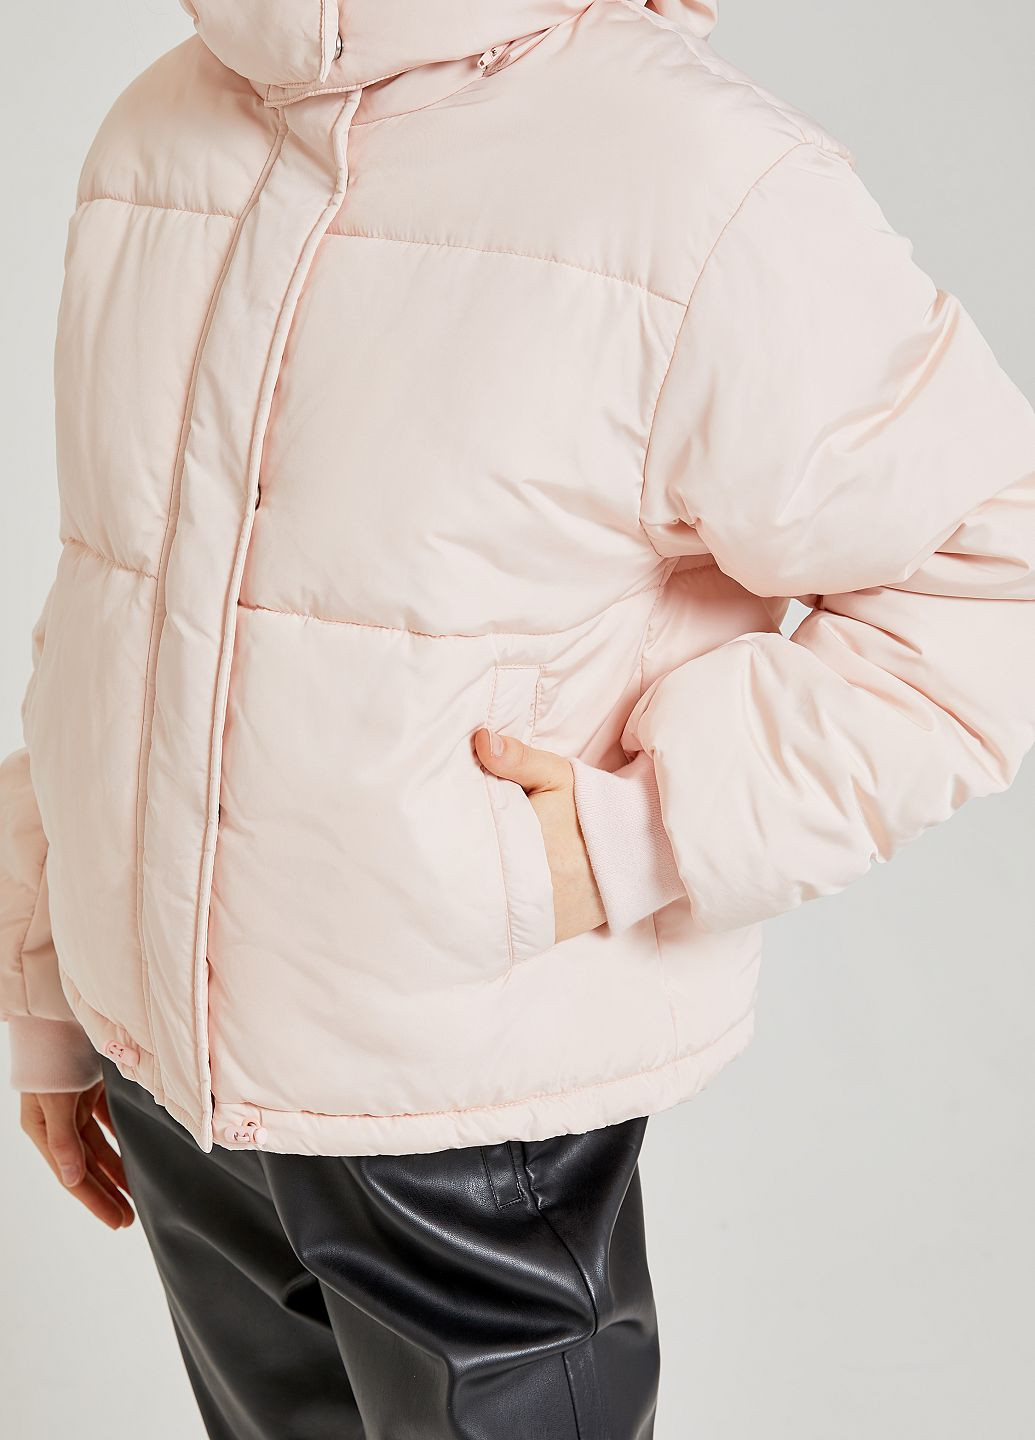 Светло-розовая демисезонная куртка SELA